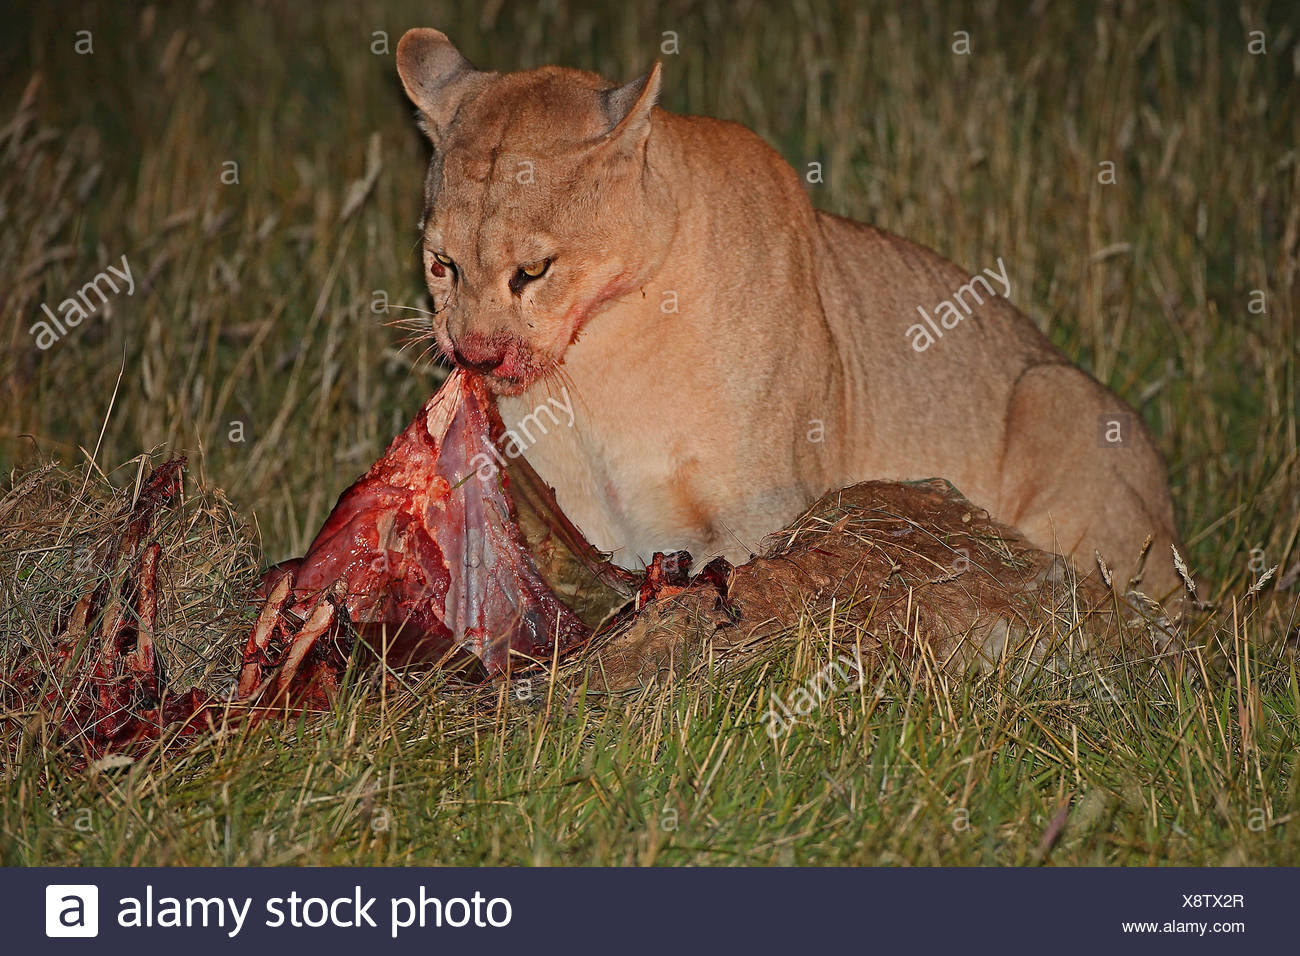 puma eating